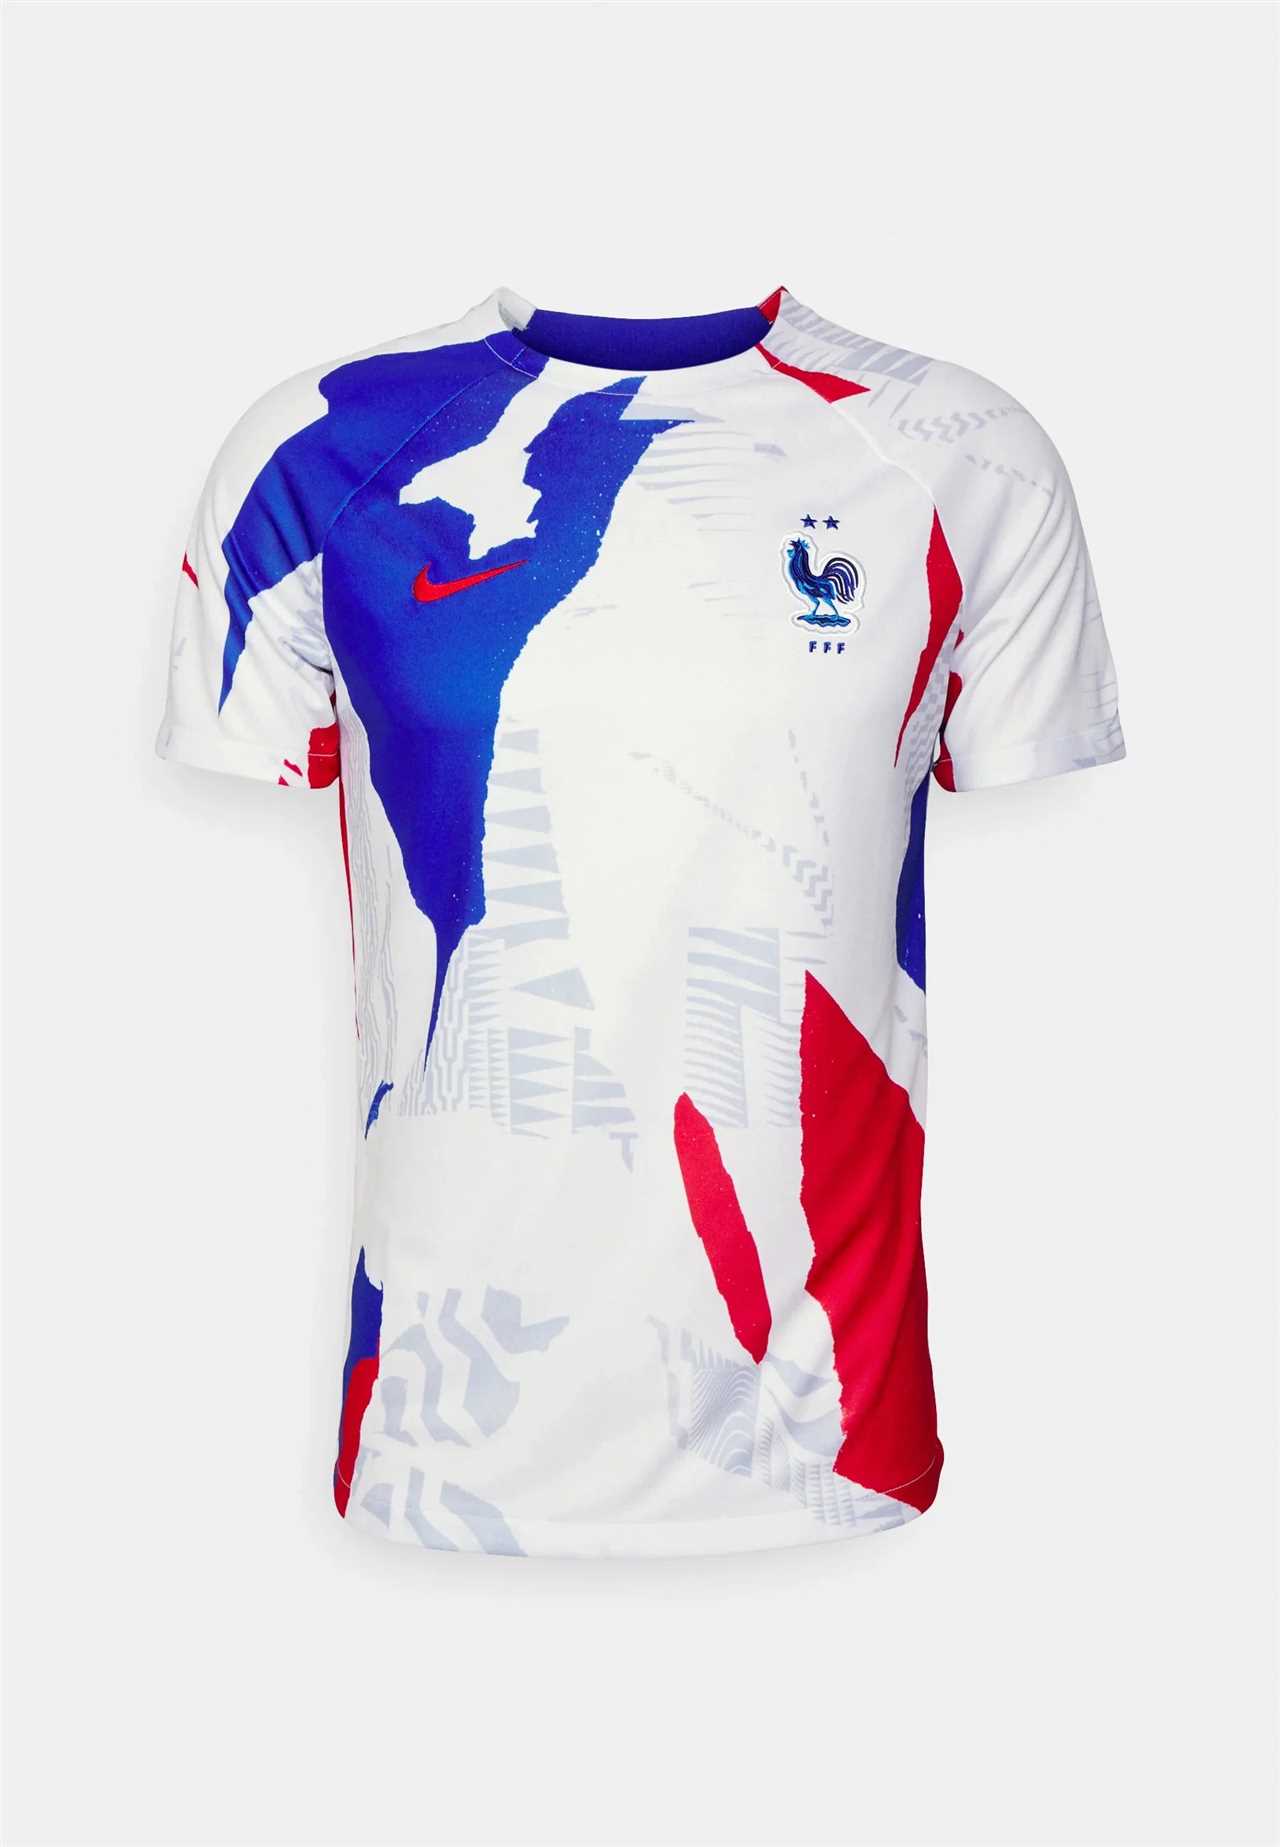 Achetez dès maintenant ce maillot officiel et rejoignez la famille des supporters de l'équipe de France !